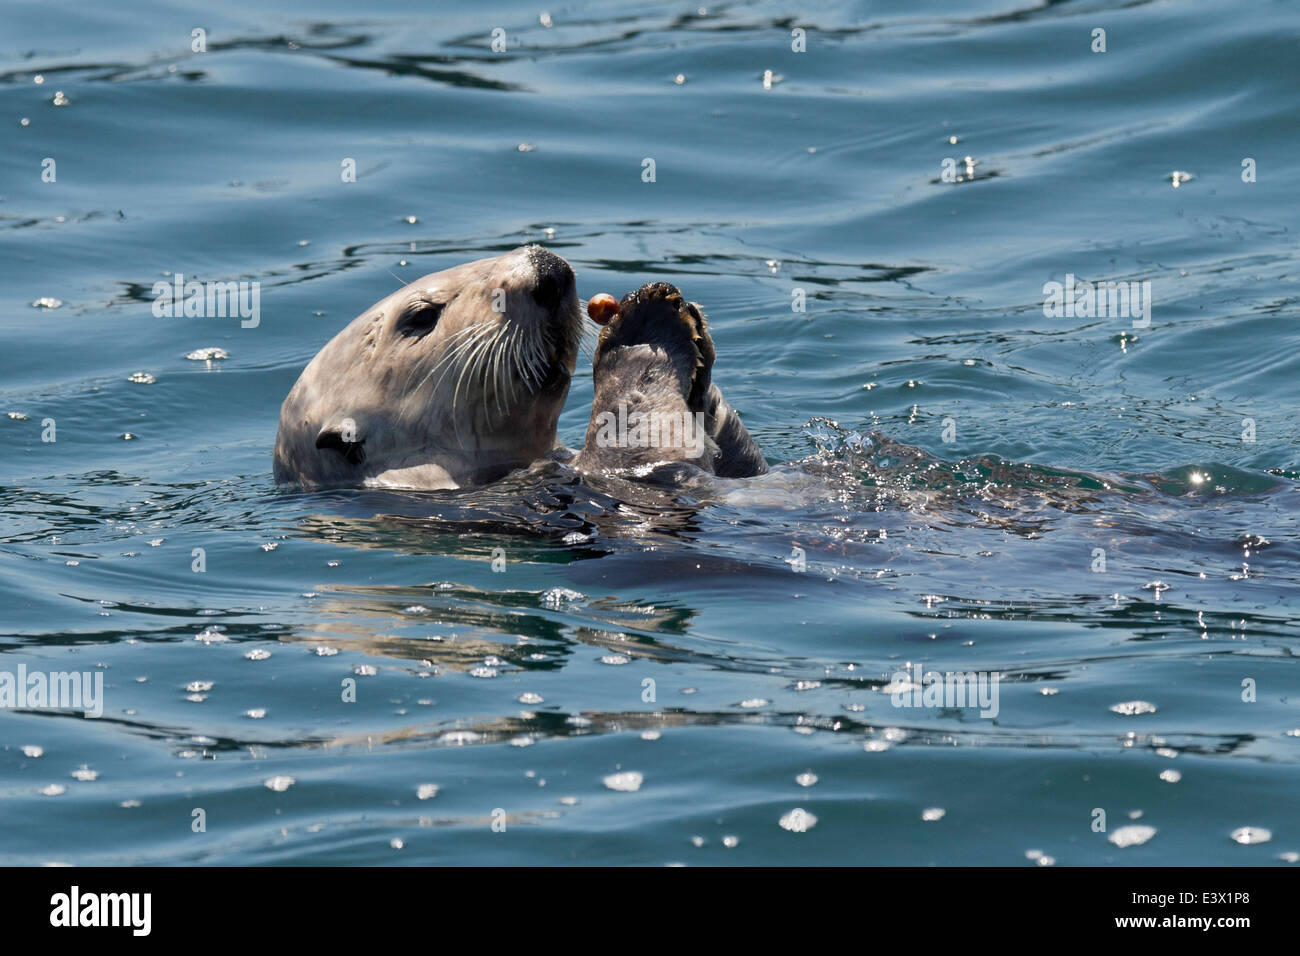 California Sea Otter (Enhydra lutris), mangiare crostacei al di fuori della sua pancia, Monterey, California, Oceano Pacifico Foto Stock